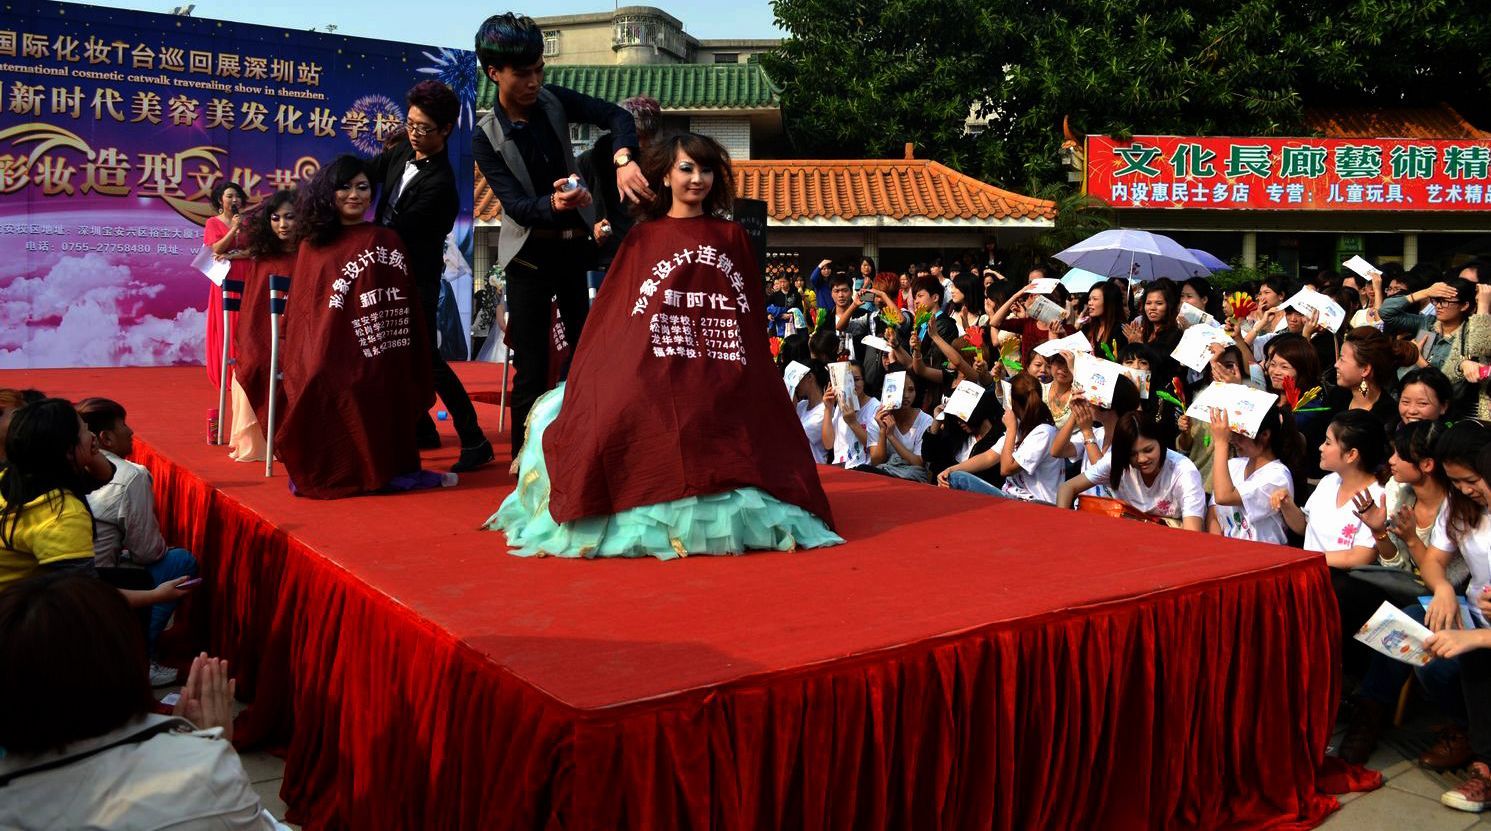 深圳美发学校,新时代美发班学员正在表演发型造型秀